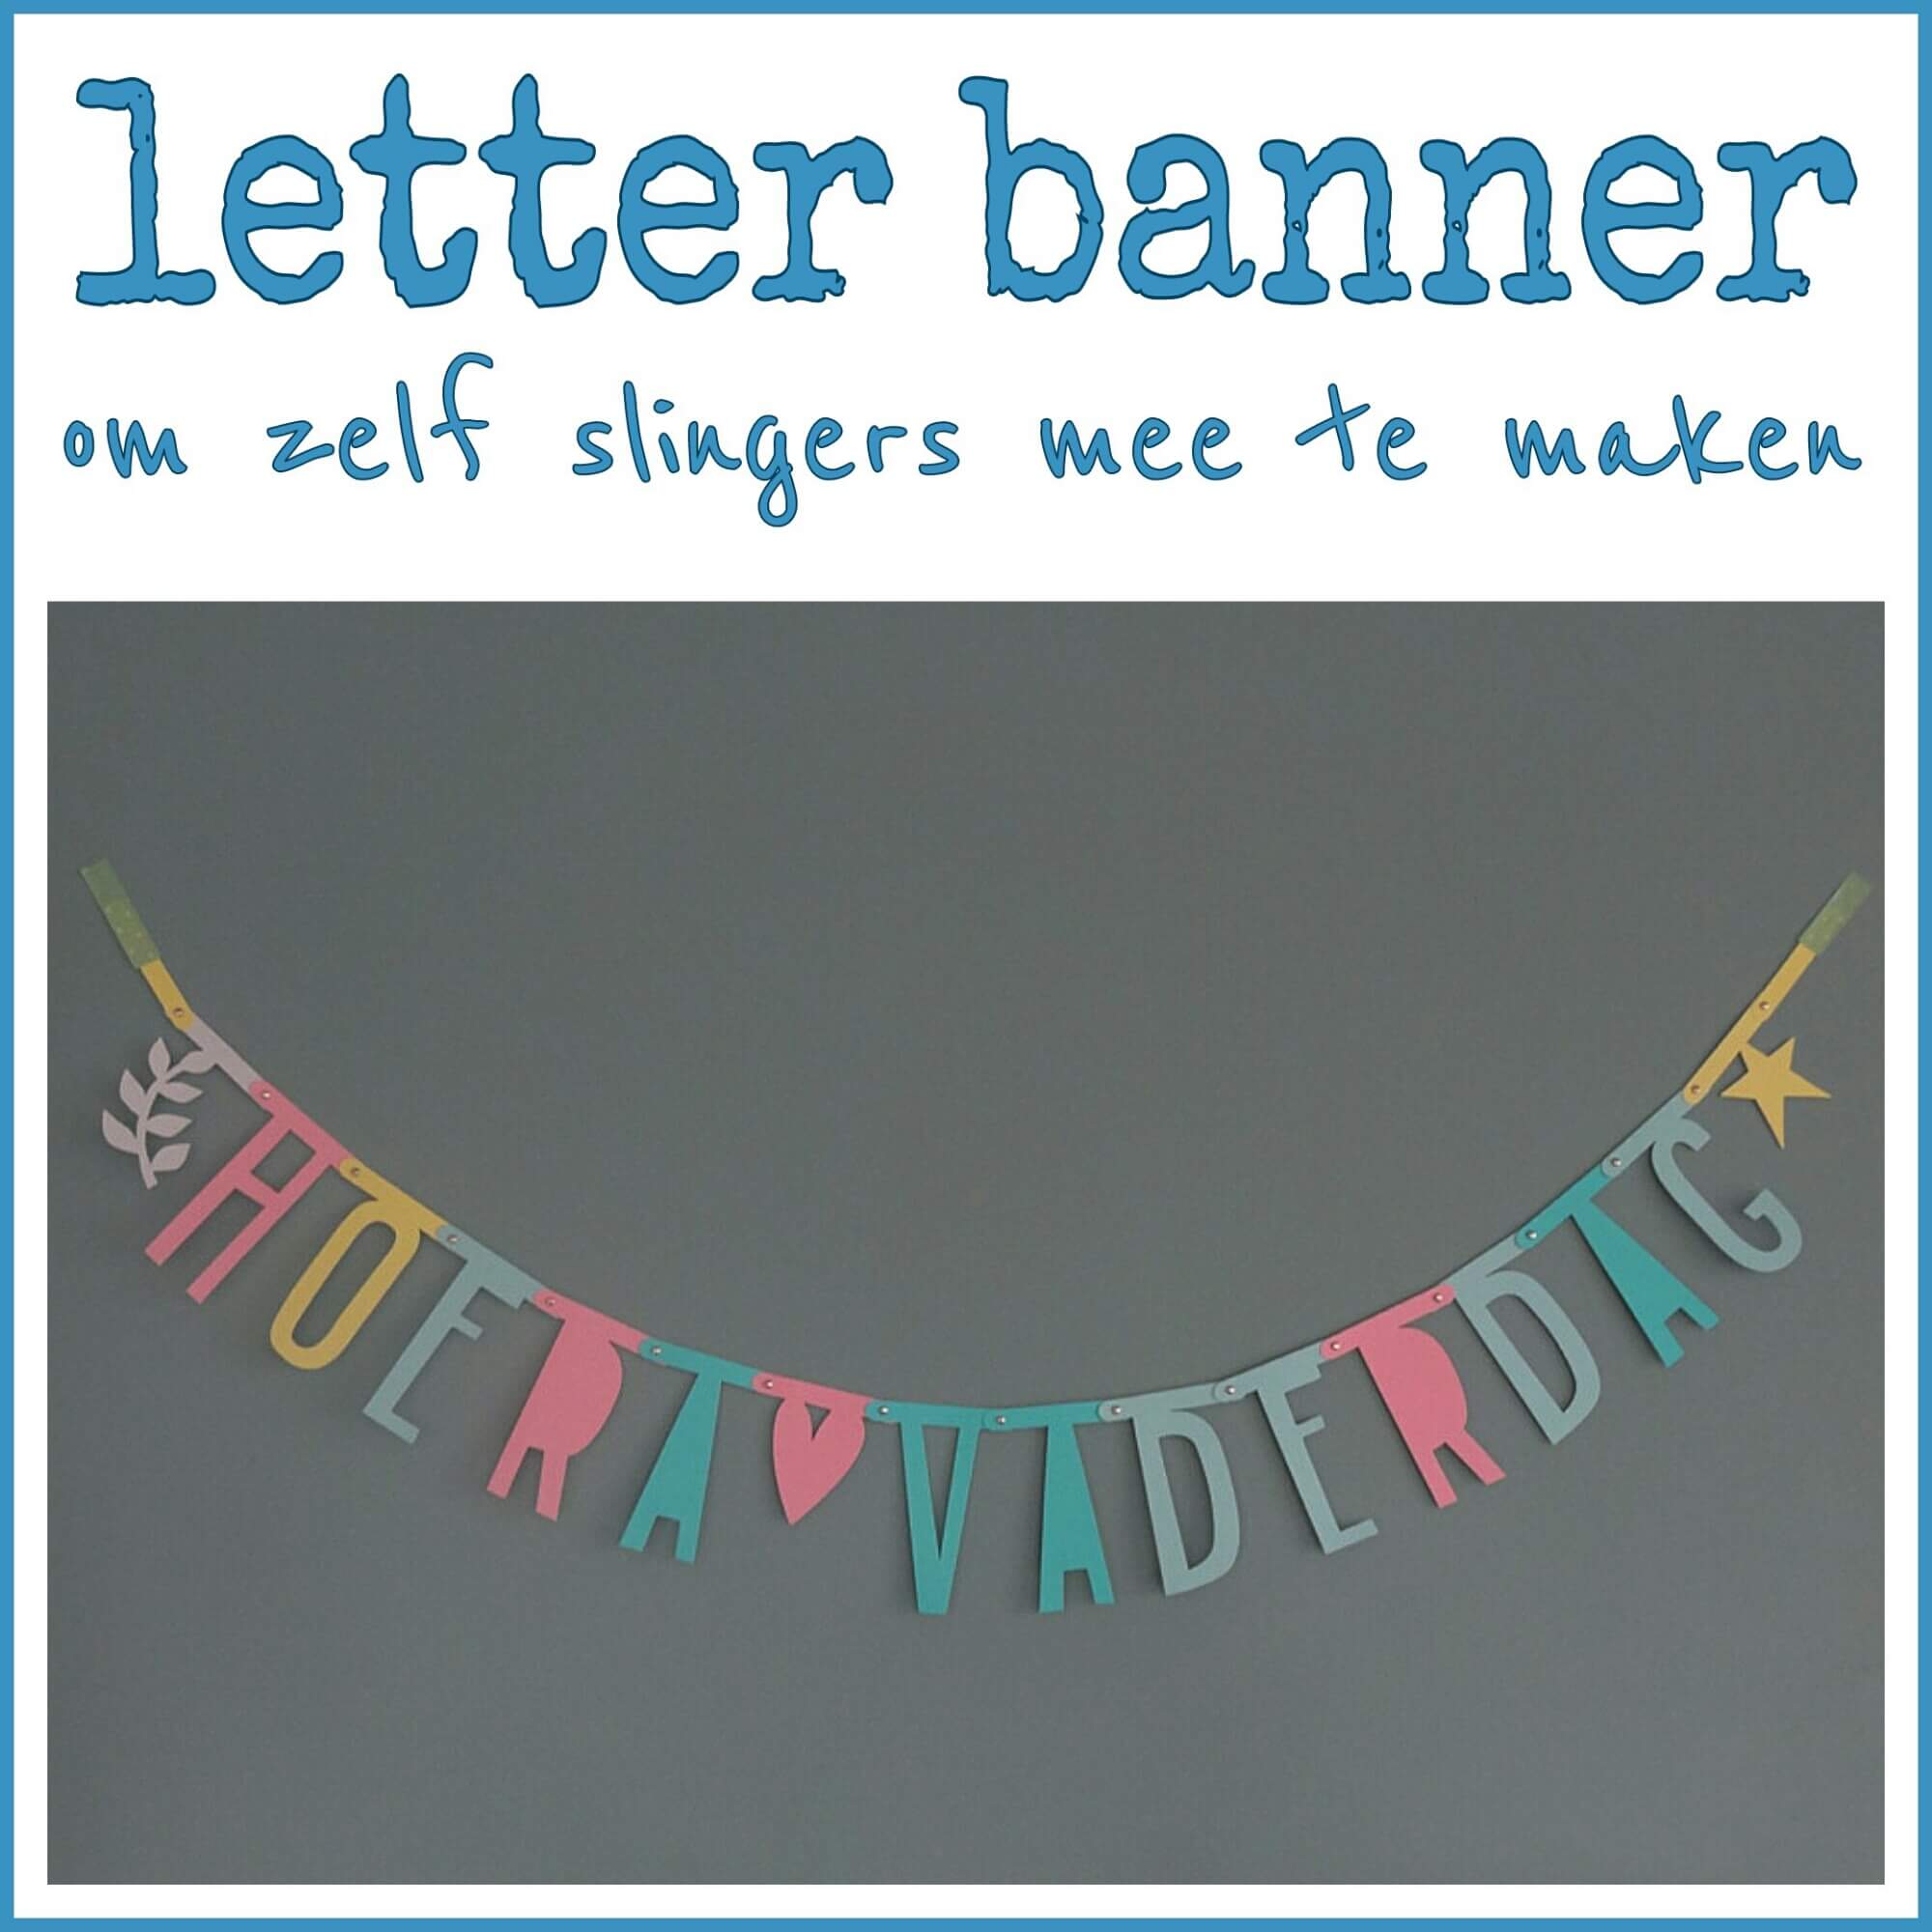 Dank u voor uw hulp Alternatief voorstel Getand Letter banner om zelf slingers mee te maken - Leuk met kids Leuk met kids